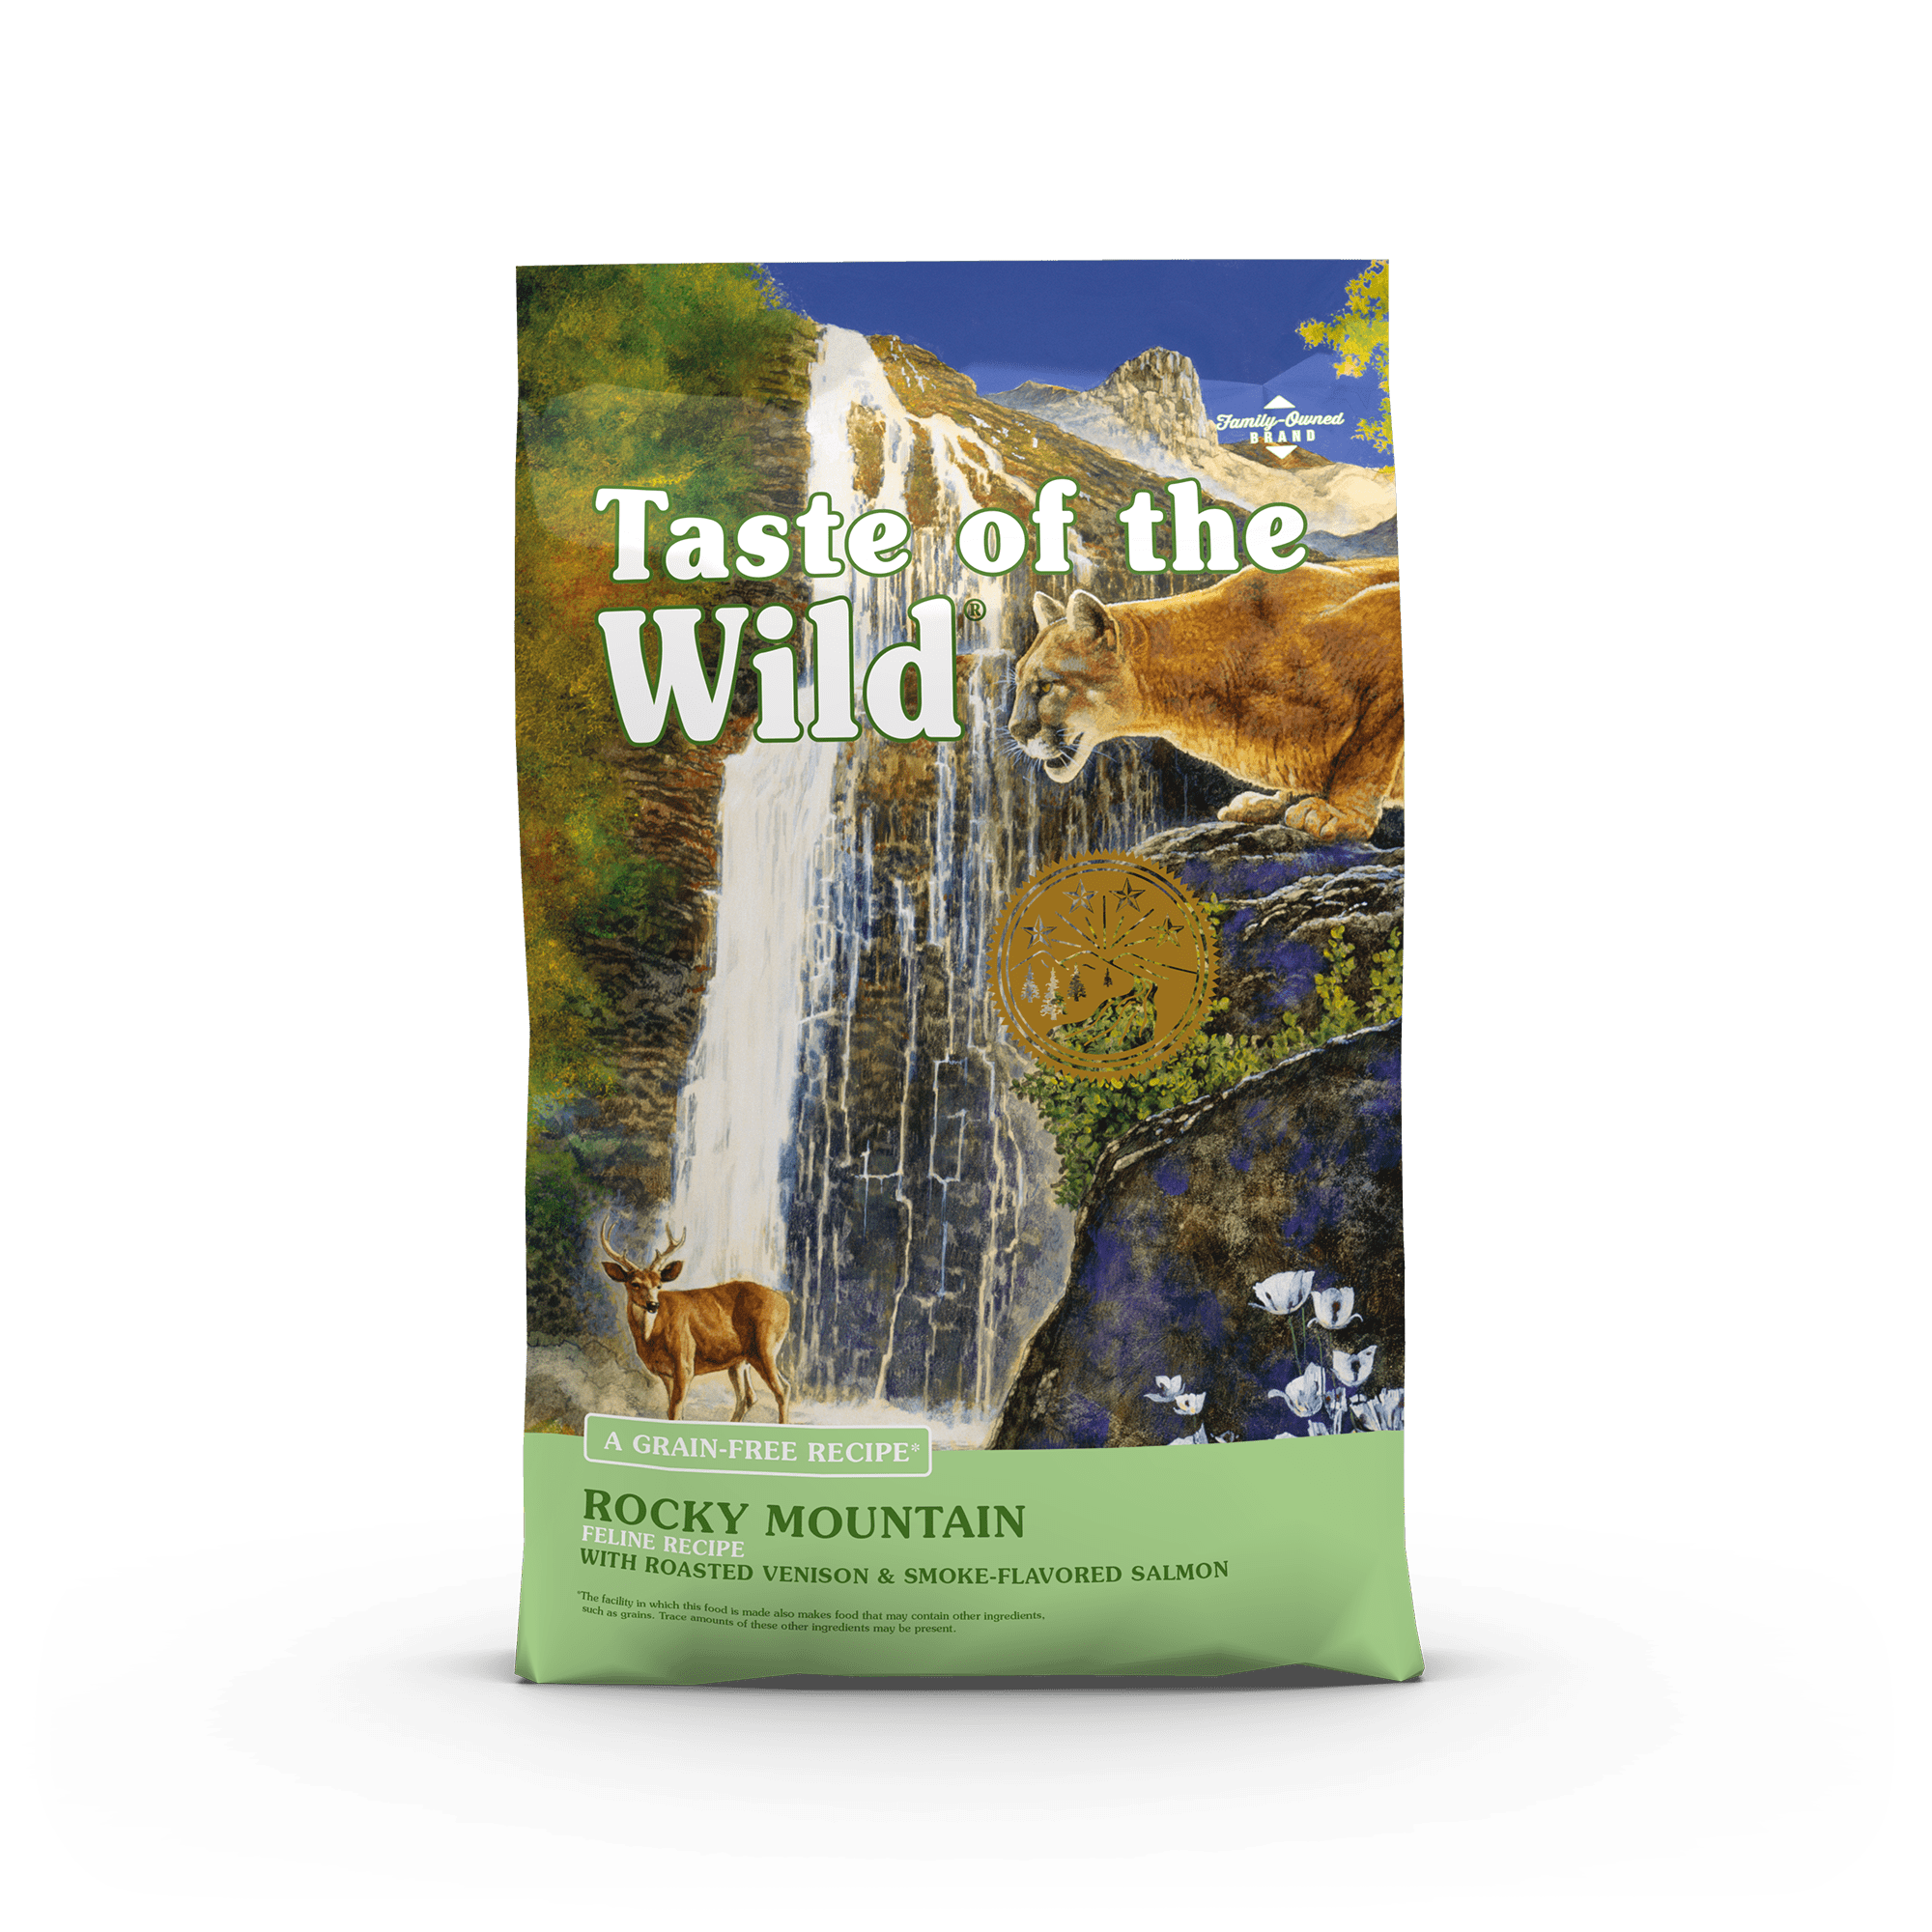 Taste of the Wild  Rocky Mountain Feline Recipe